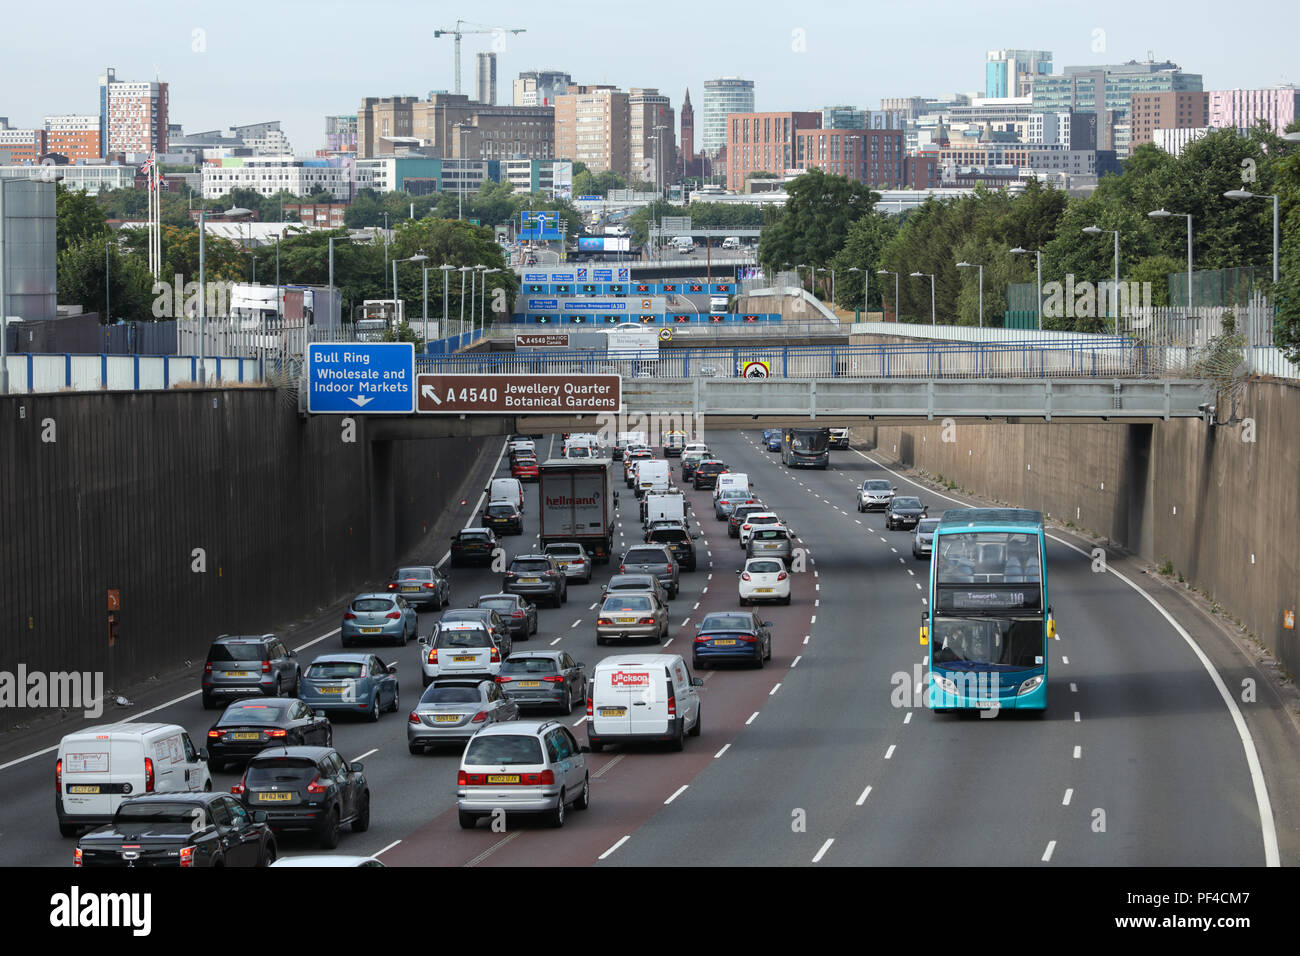 Mattina traffico di punta di ora in direzione del centro di Birmingham lungo l'Aston Expressway. Lo skyline del centro città è visibile in lontananza. Foto Stock